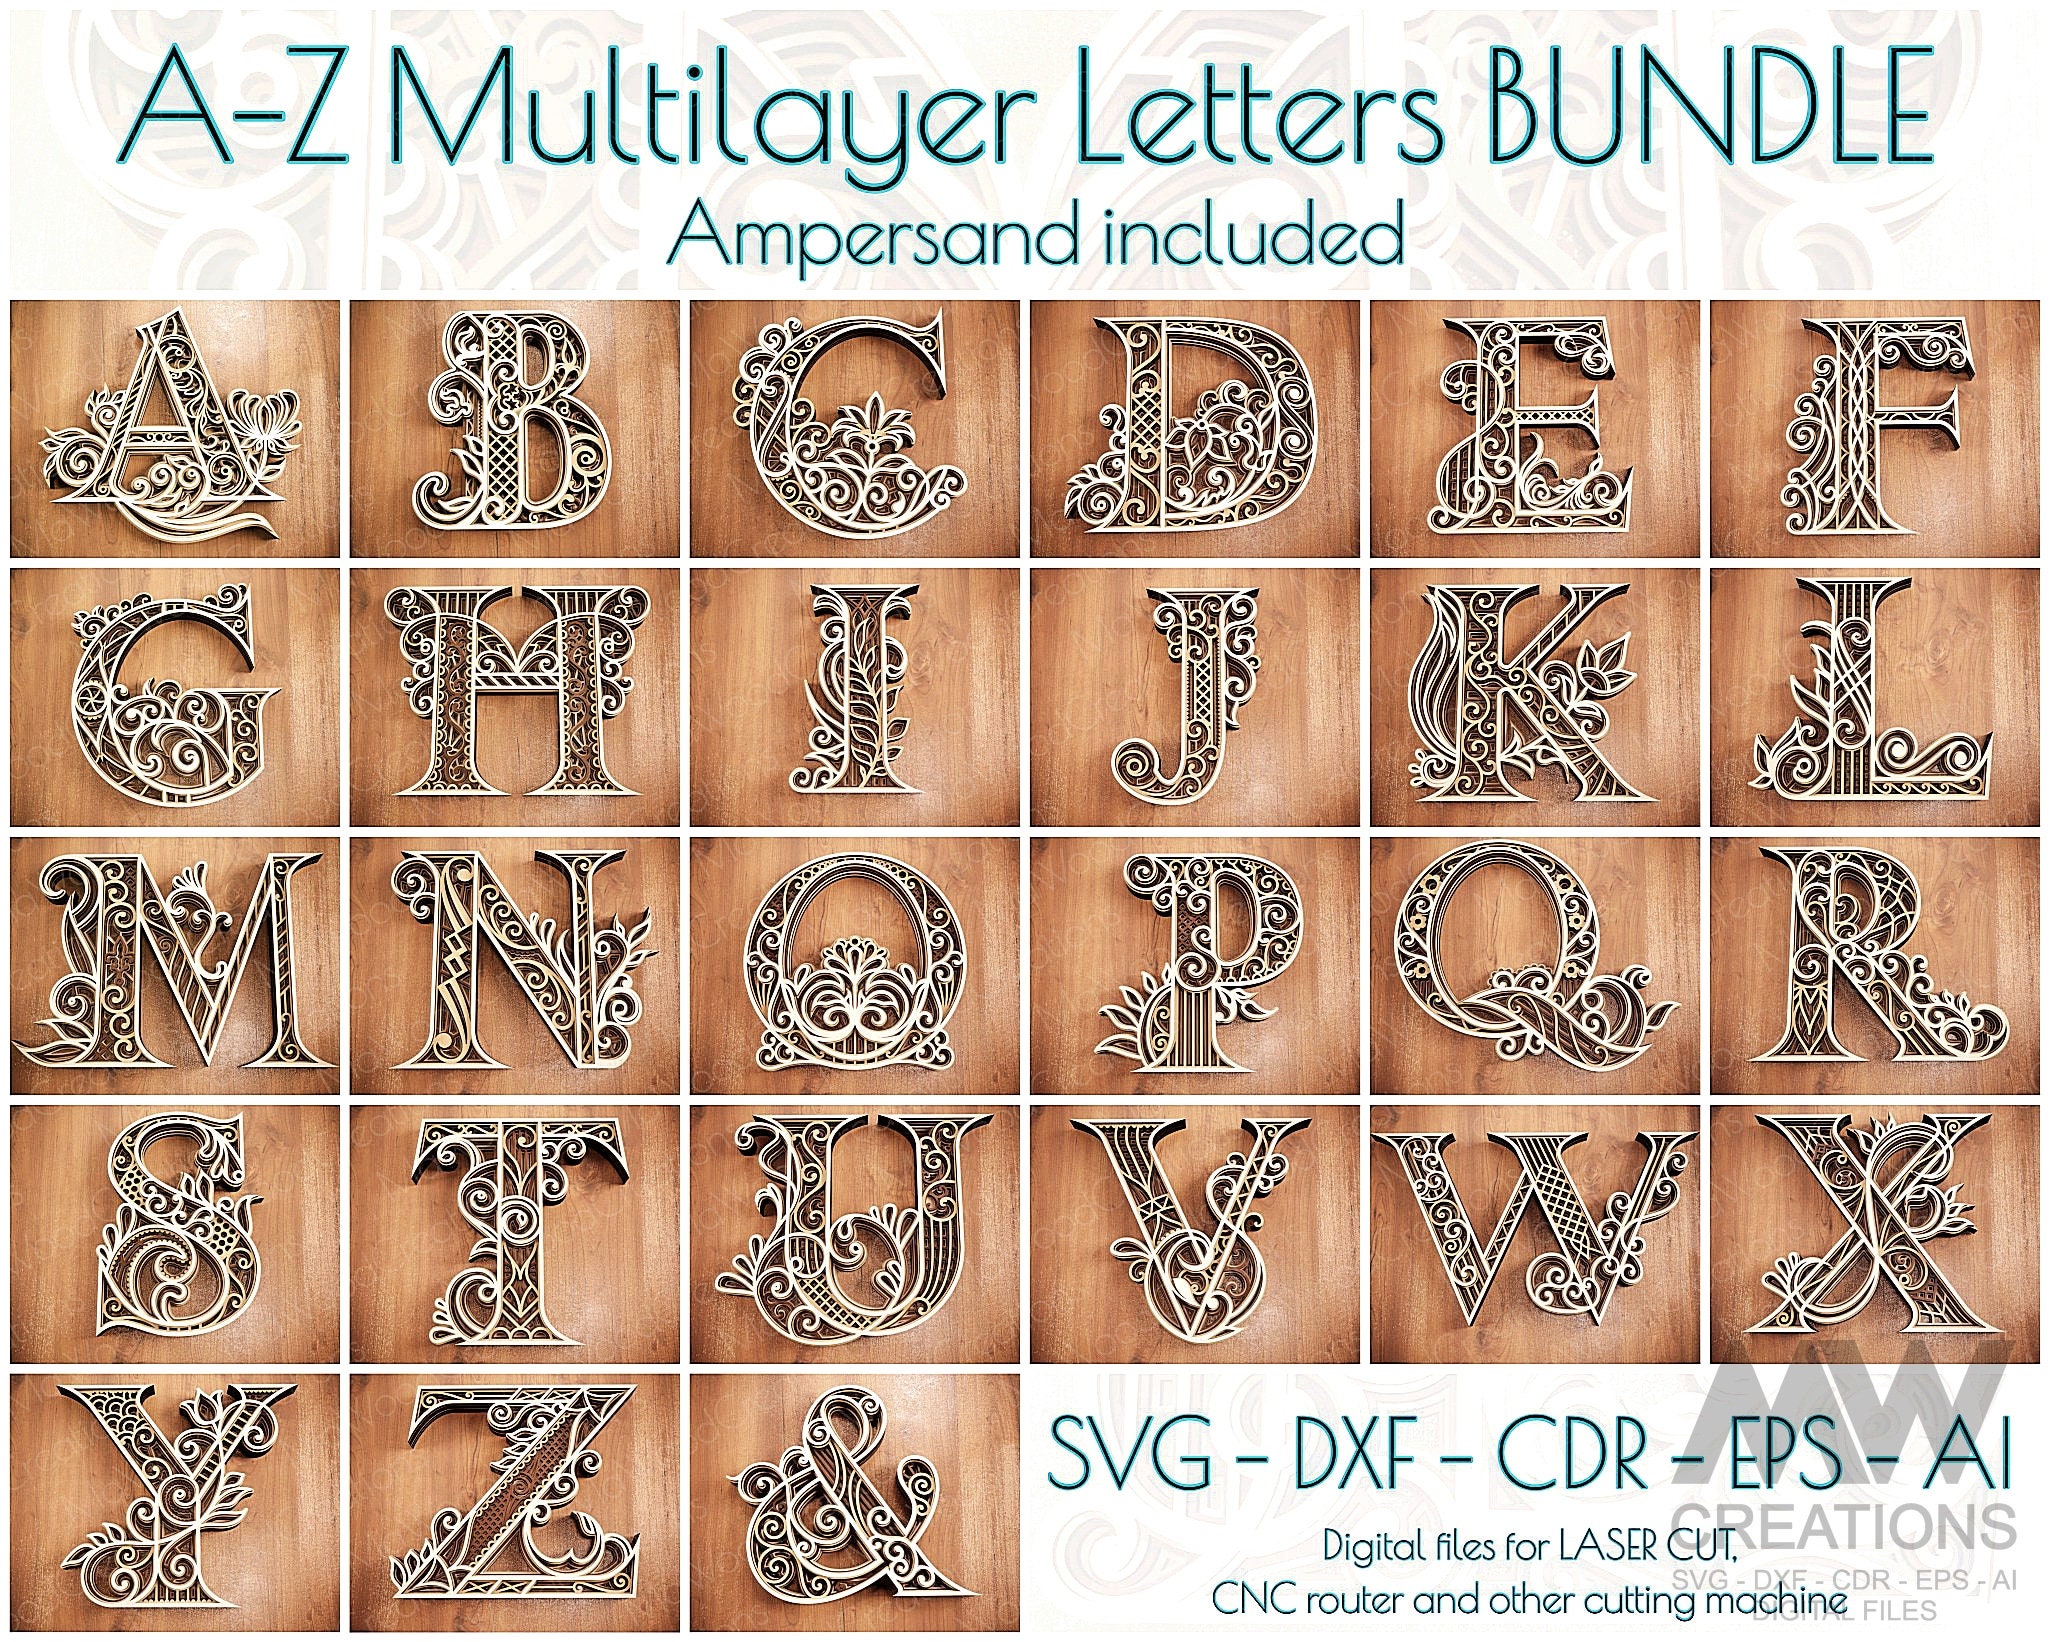 TVOKIDS Uppercase Alphabet 3D Printed Letters Custom Name